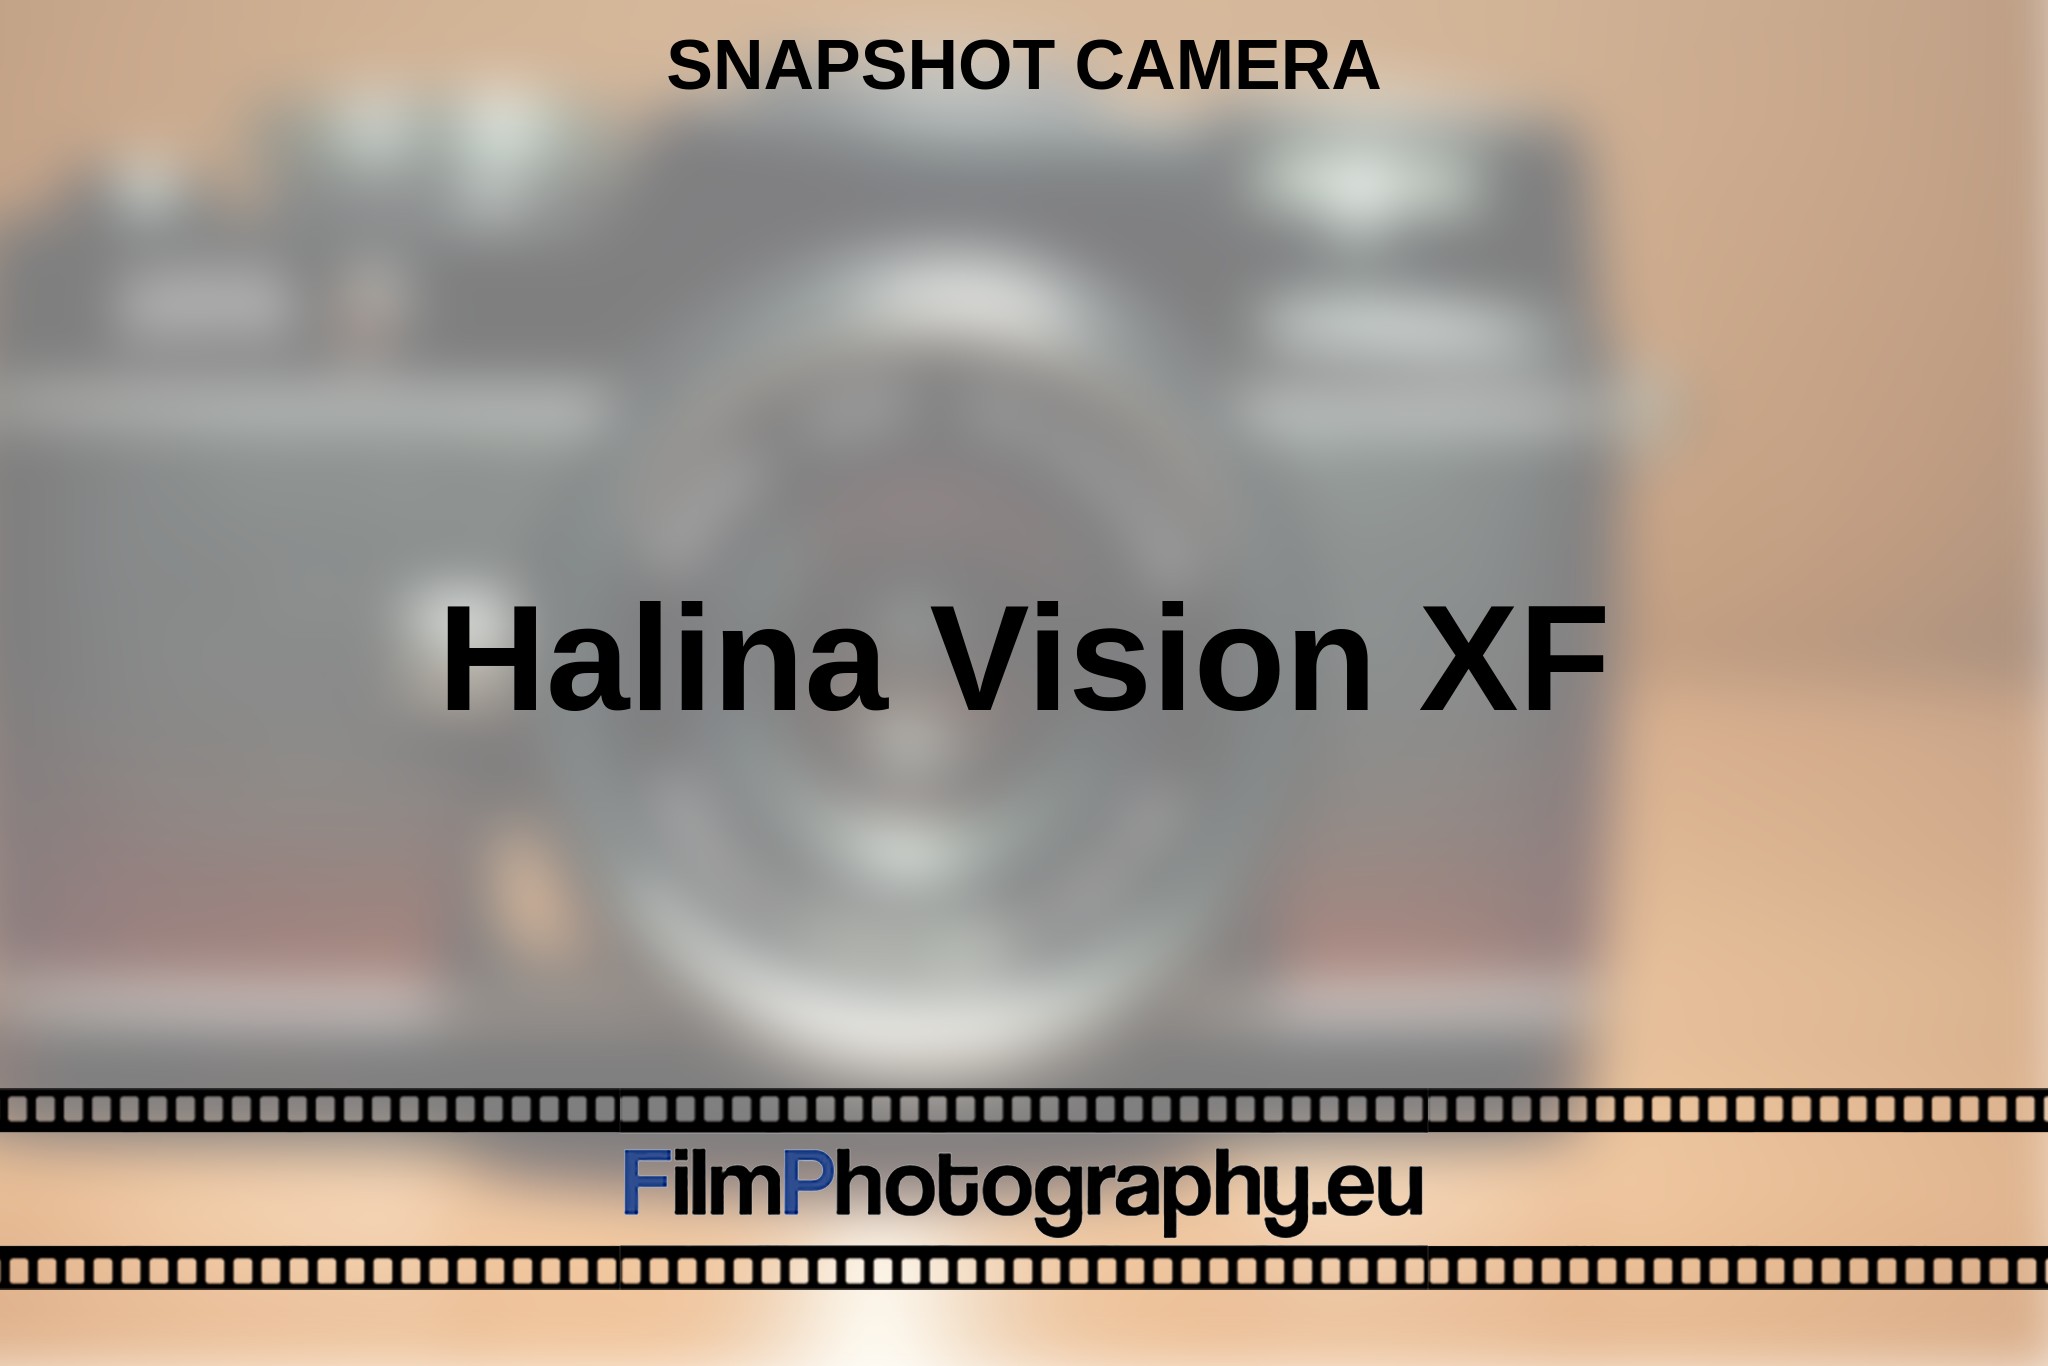 halina-vision-xf-snapshot-camera-en-bnv.jpg